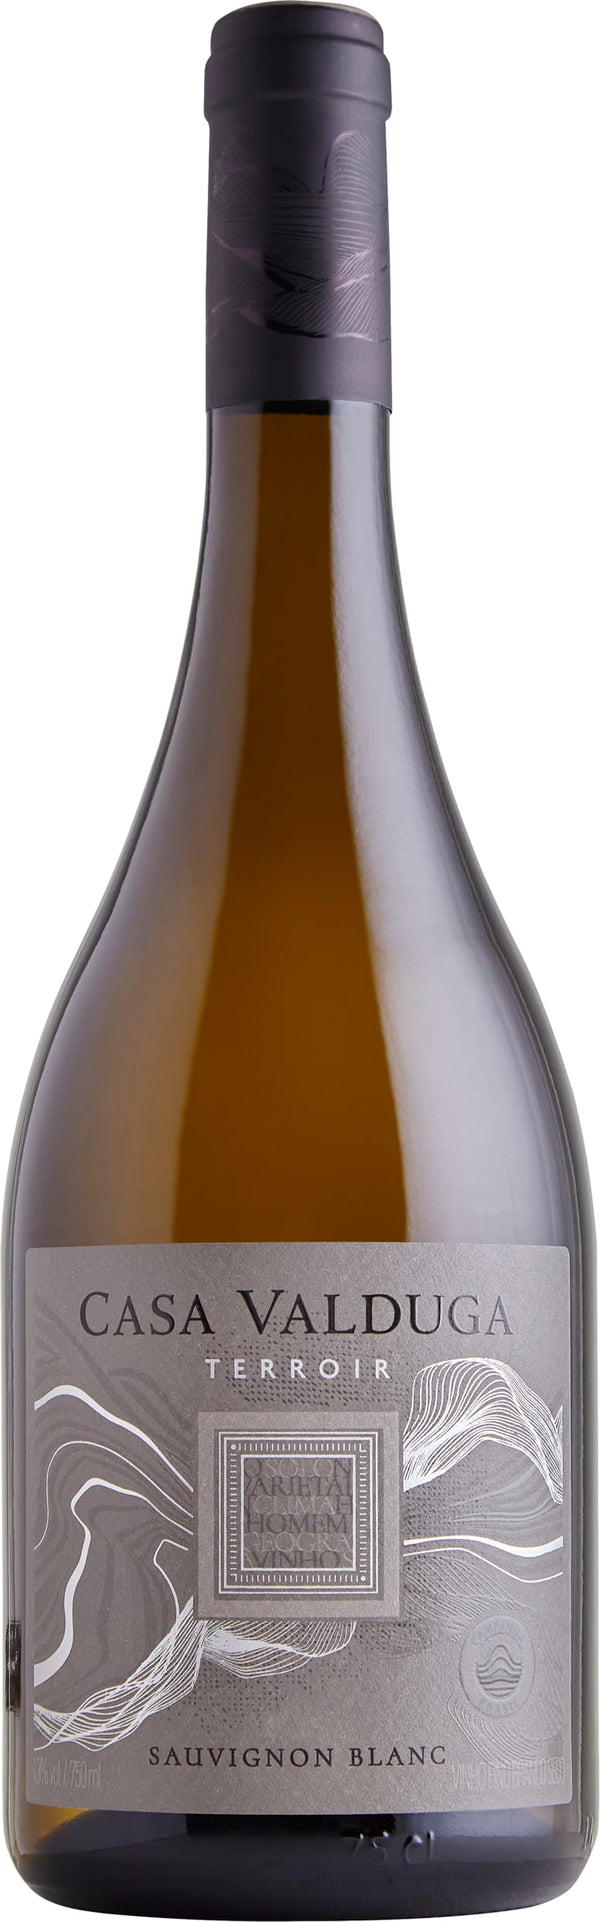 Casa Valduga Terrior Sauvignon Blanc 2021 6x75cl - Just Wines 